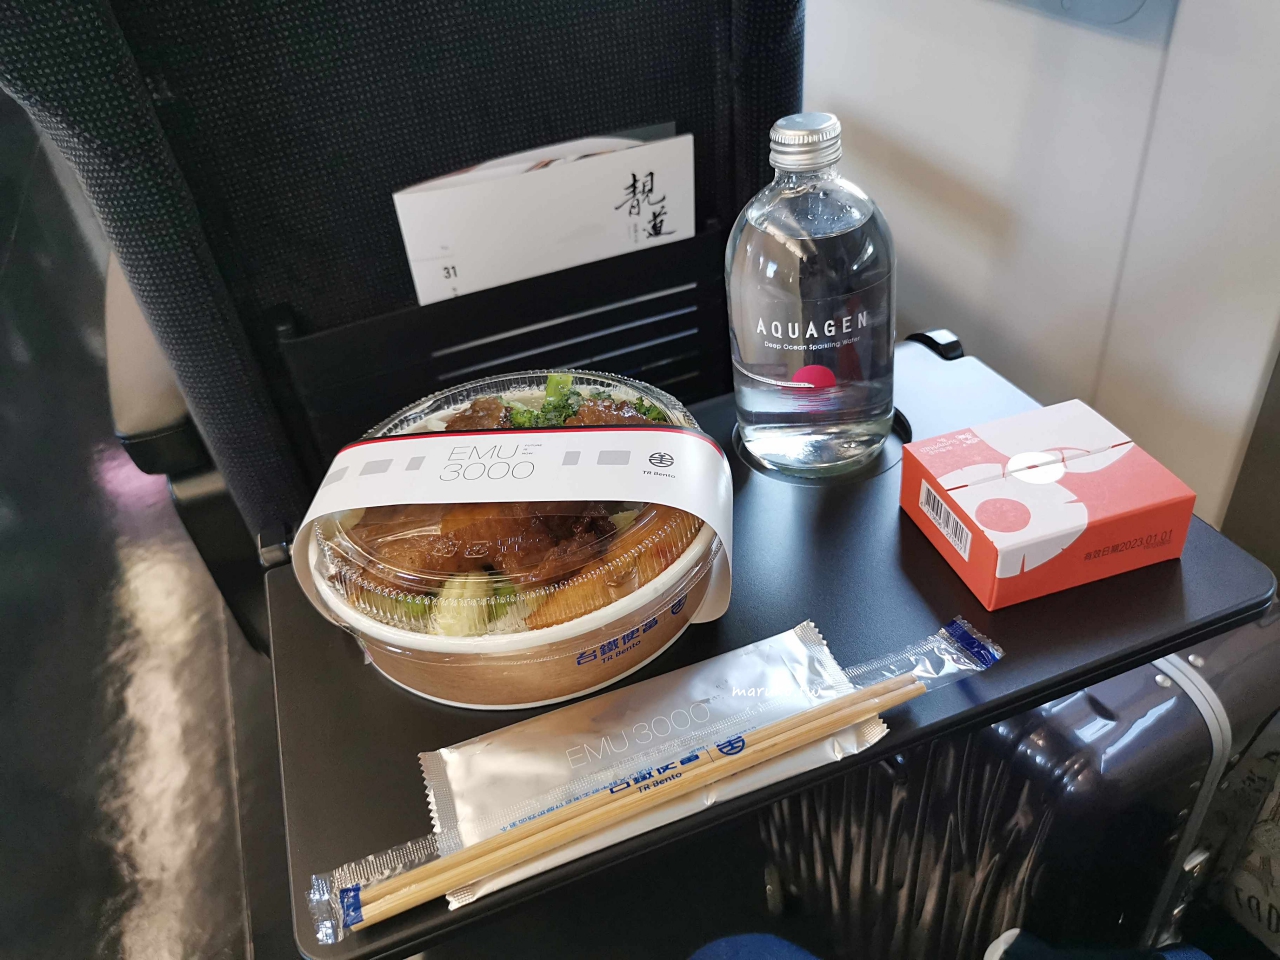 【台鐵】EMU3000型騰雲座艙 一次看懂自強號商務艙，車上限定餐點這樣訂才吃的到！ @Maruko與美食有個約會